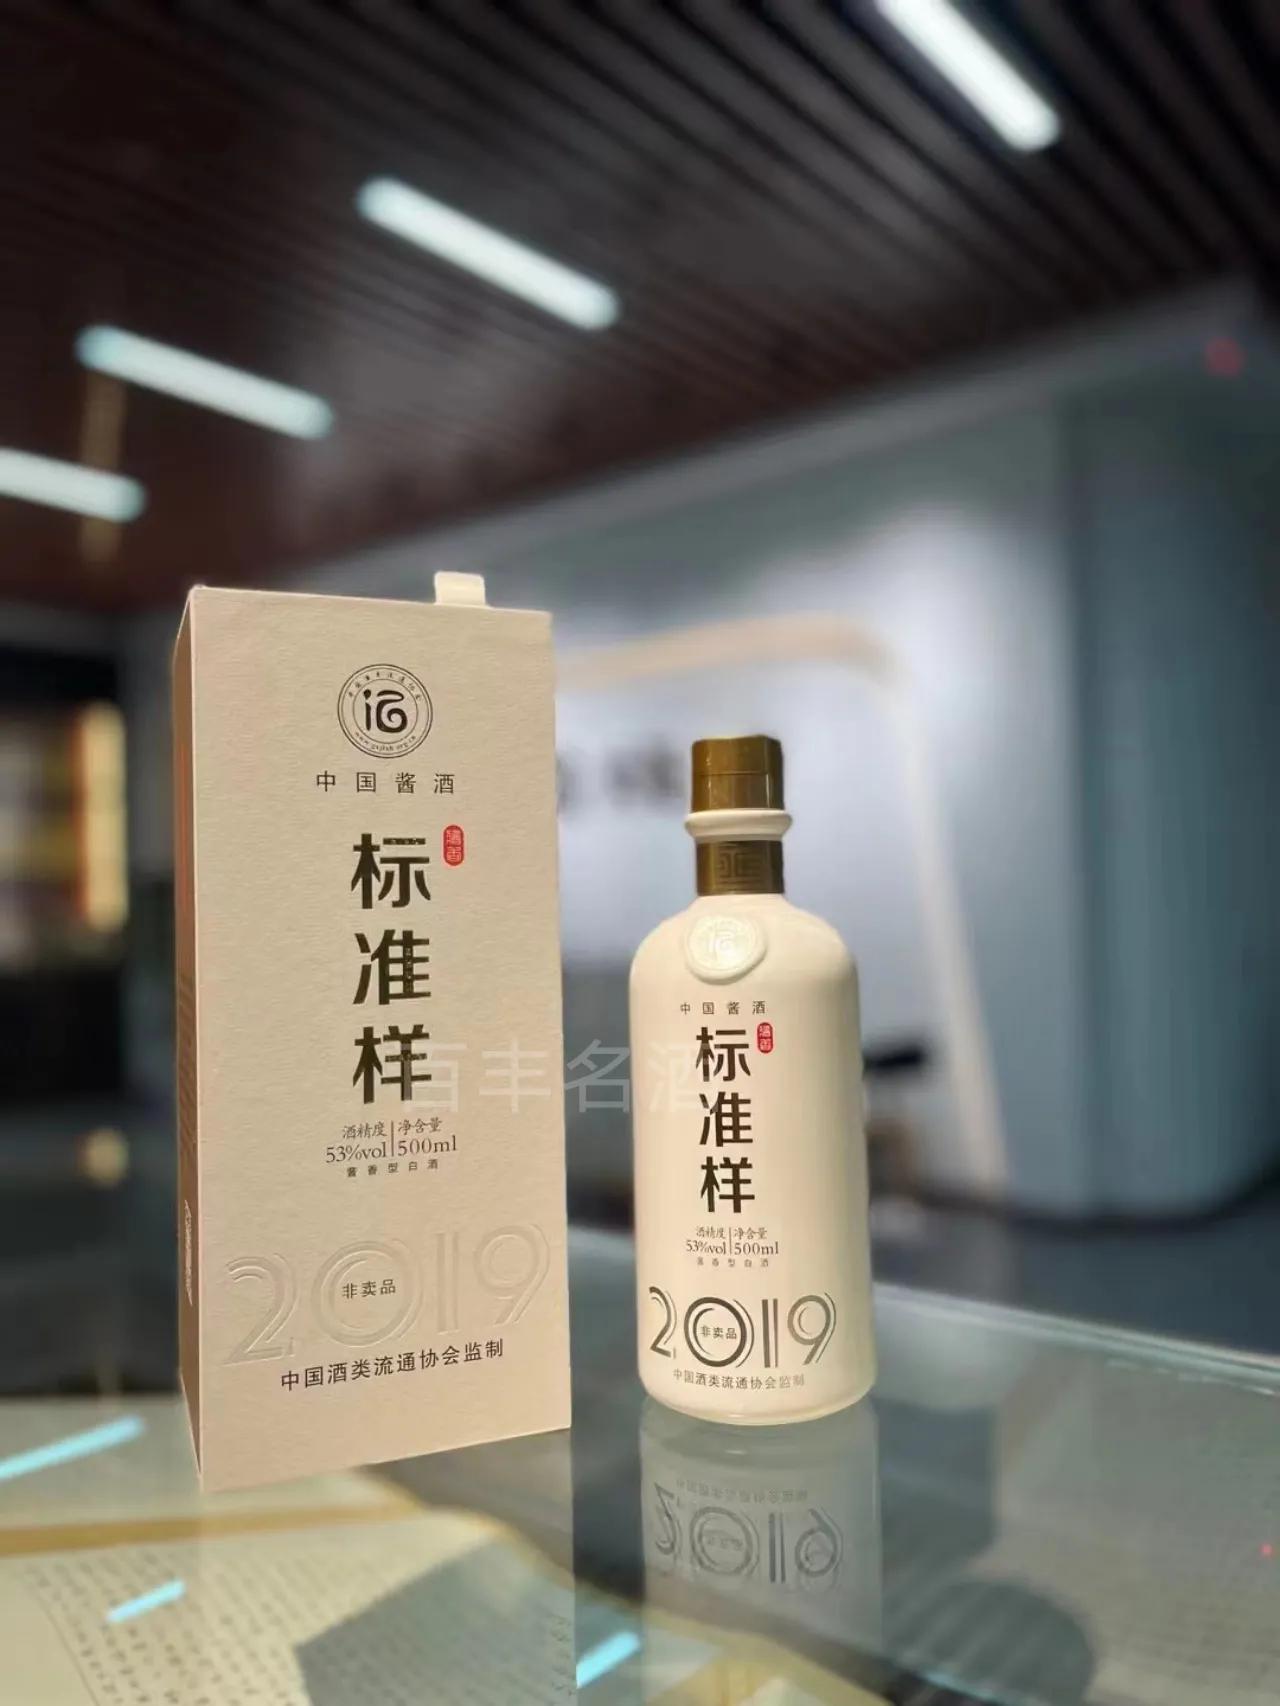 三分钟带您详细了解中国酱酒标准样，中国酒类流通协会监制出品